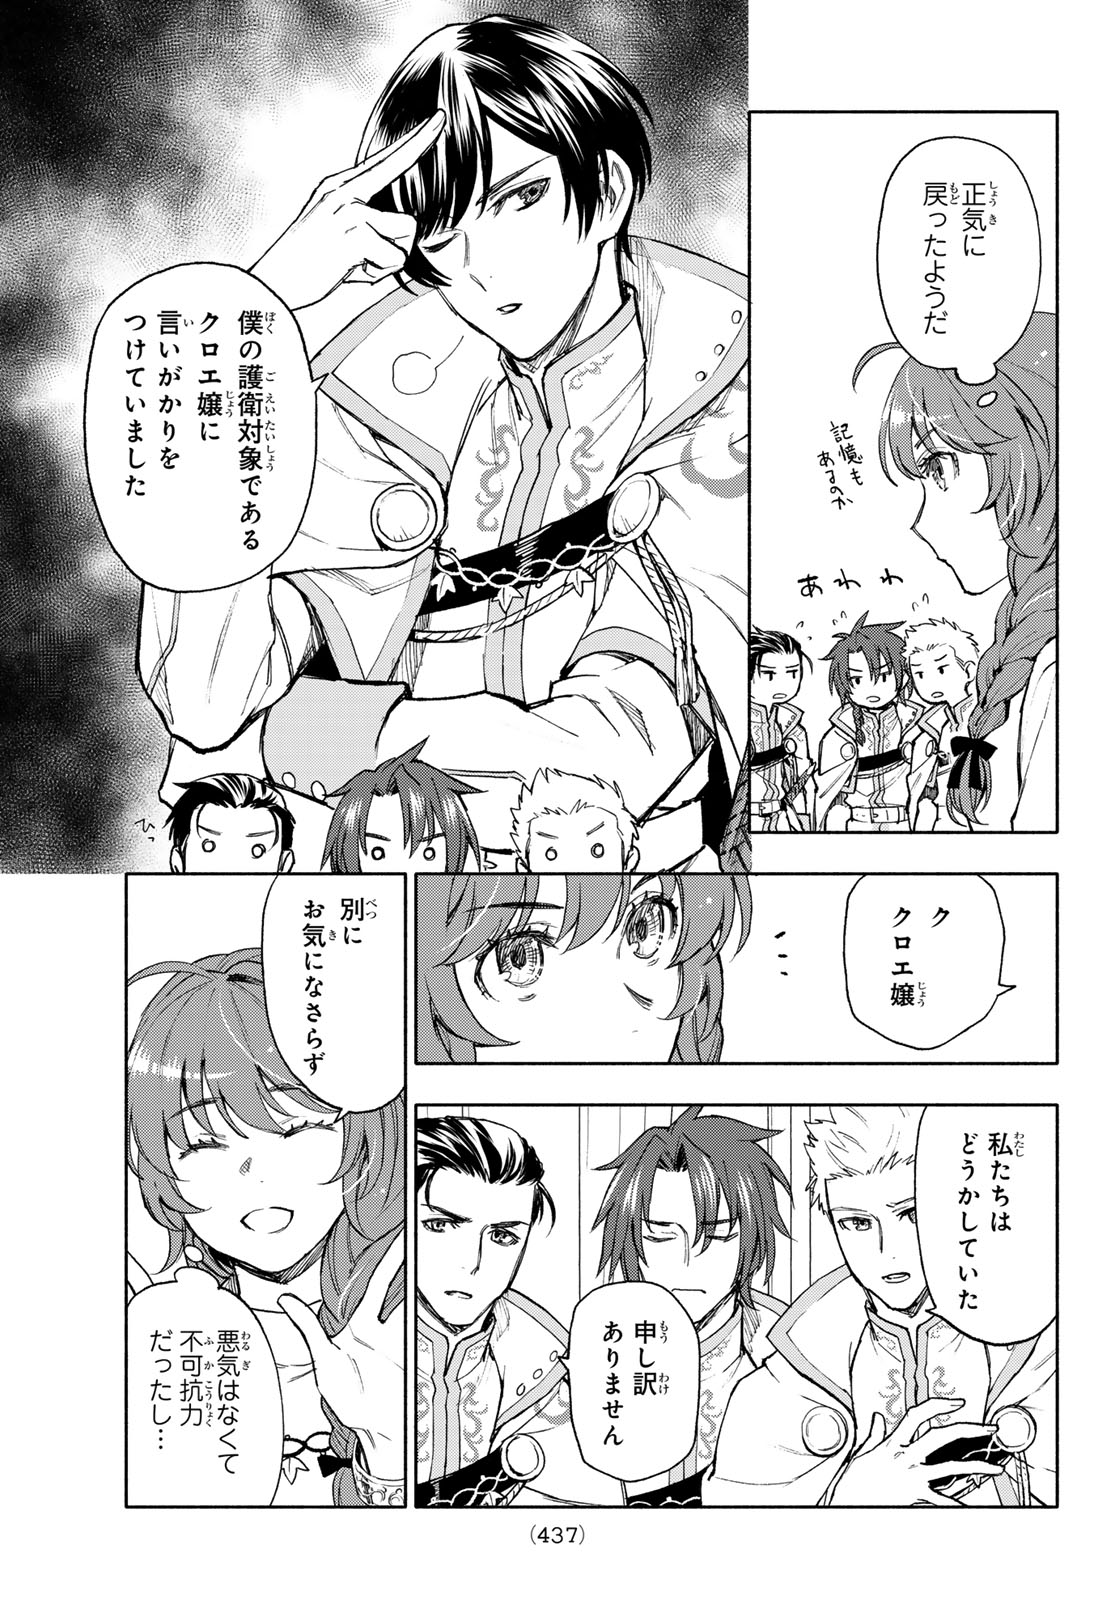 Seijo ni Uso wa Tsuujinai - Chapter 13 - Page 3